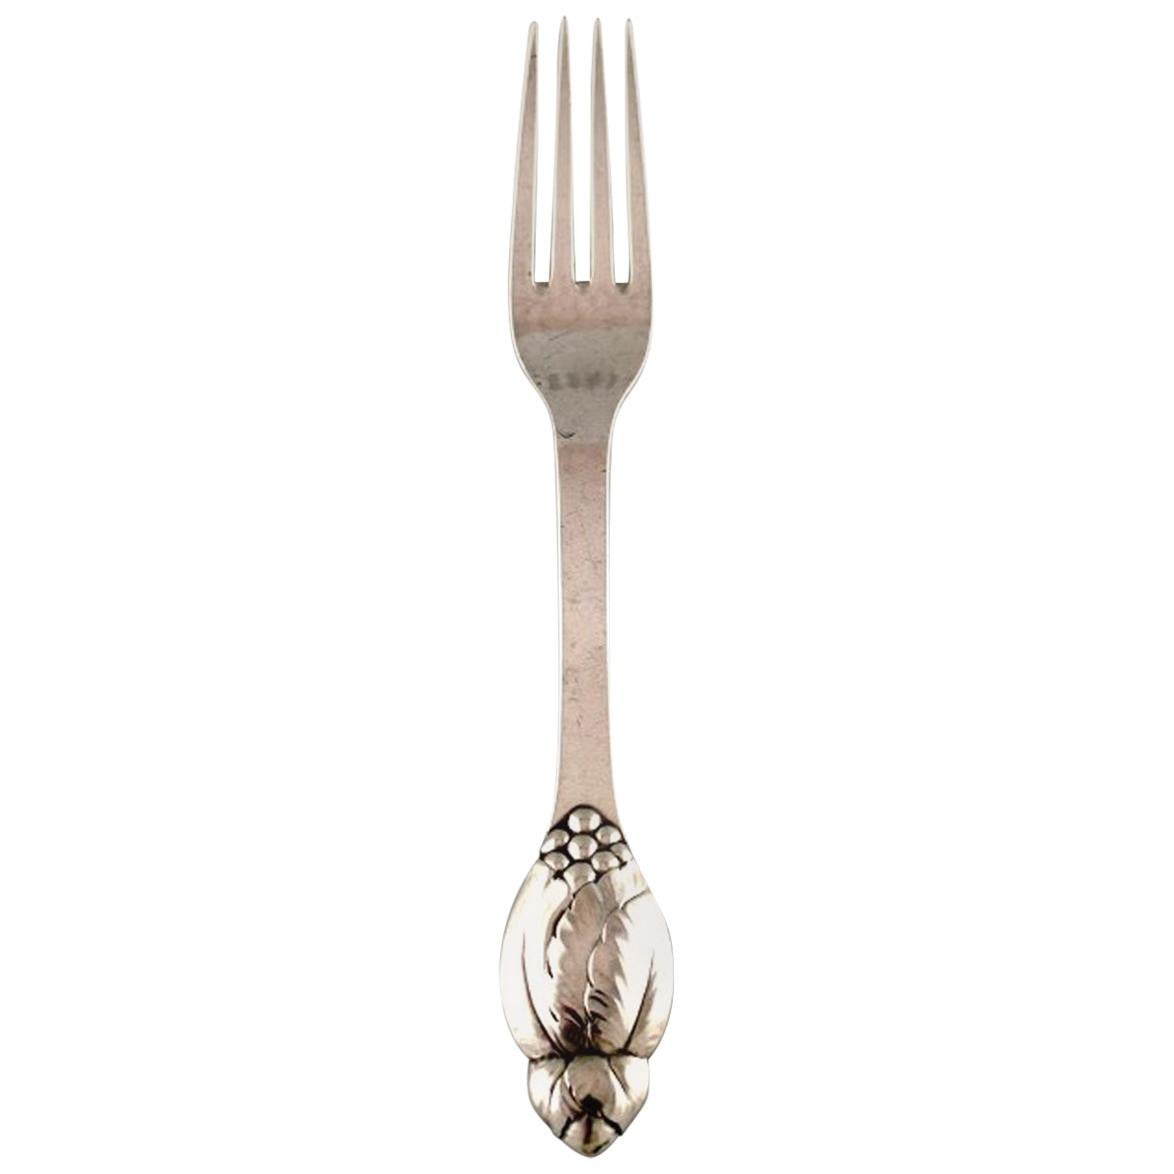 Set of 8 Evald Nielsen Number 6 Lunch Forks in All Silver, 1920s